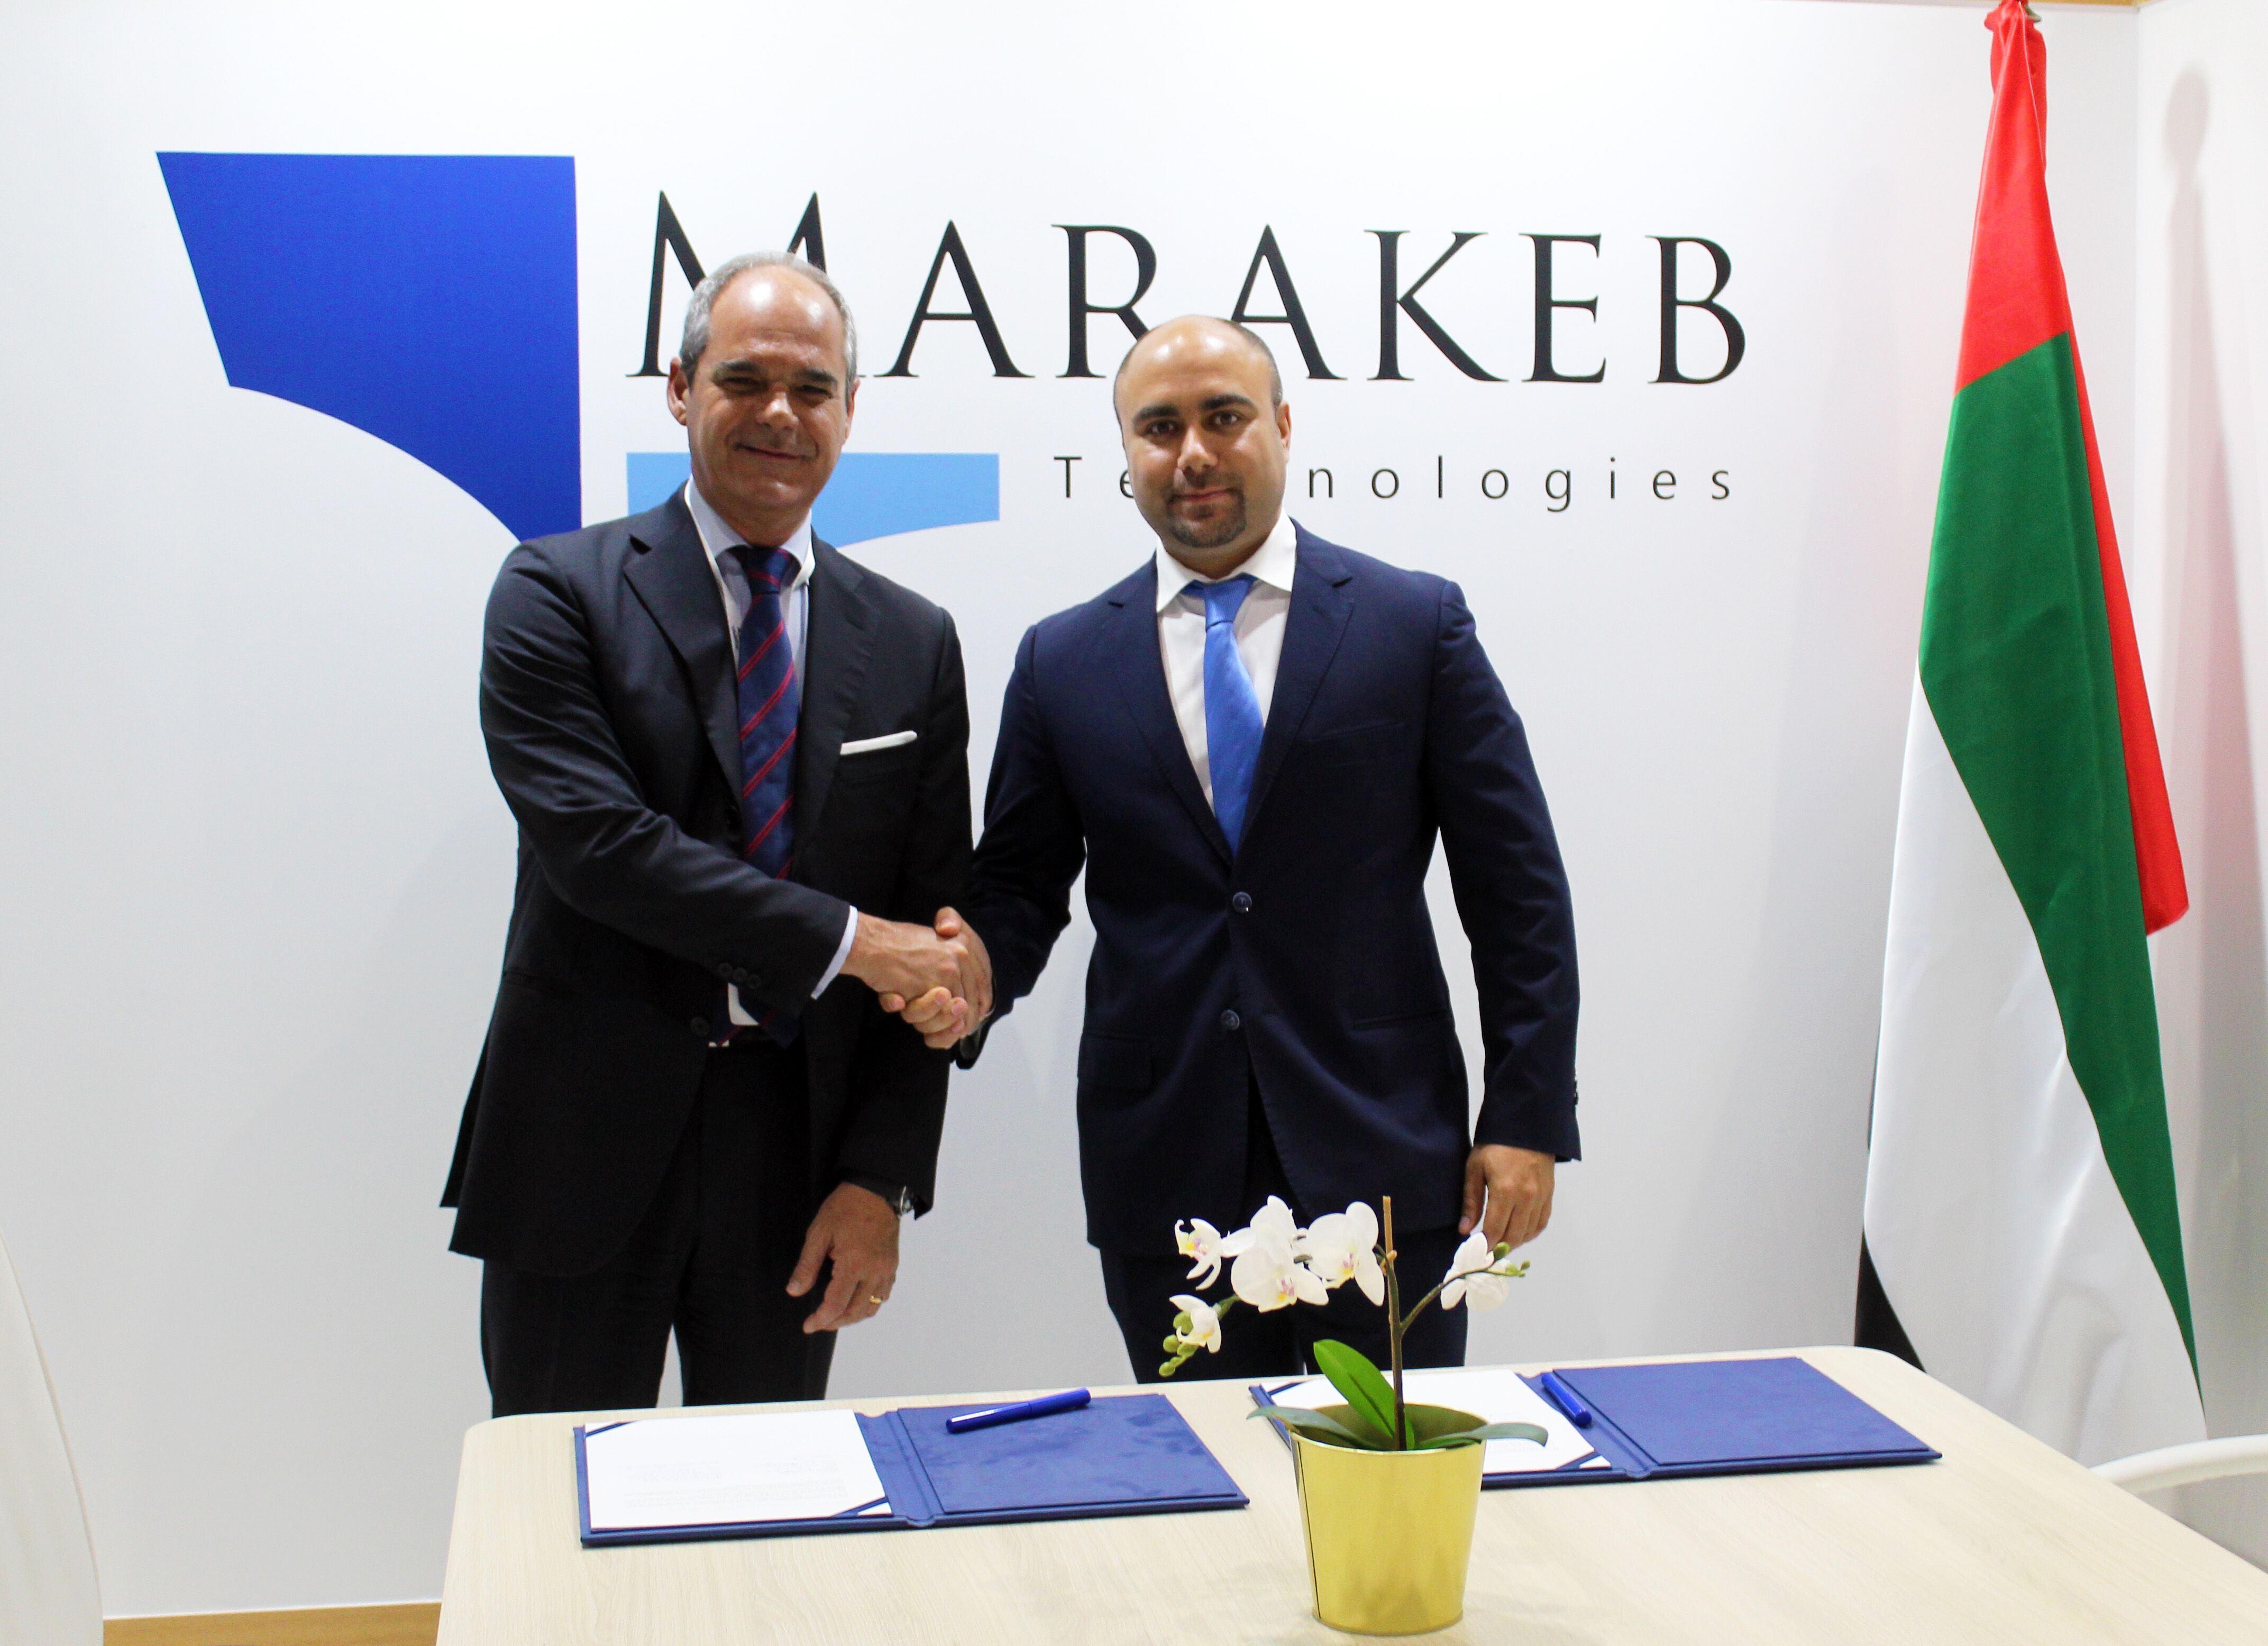 Fincantieri e Marakeb Technologies firmano mou di collaborazione nella tecnologia unmanned